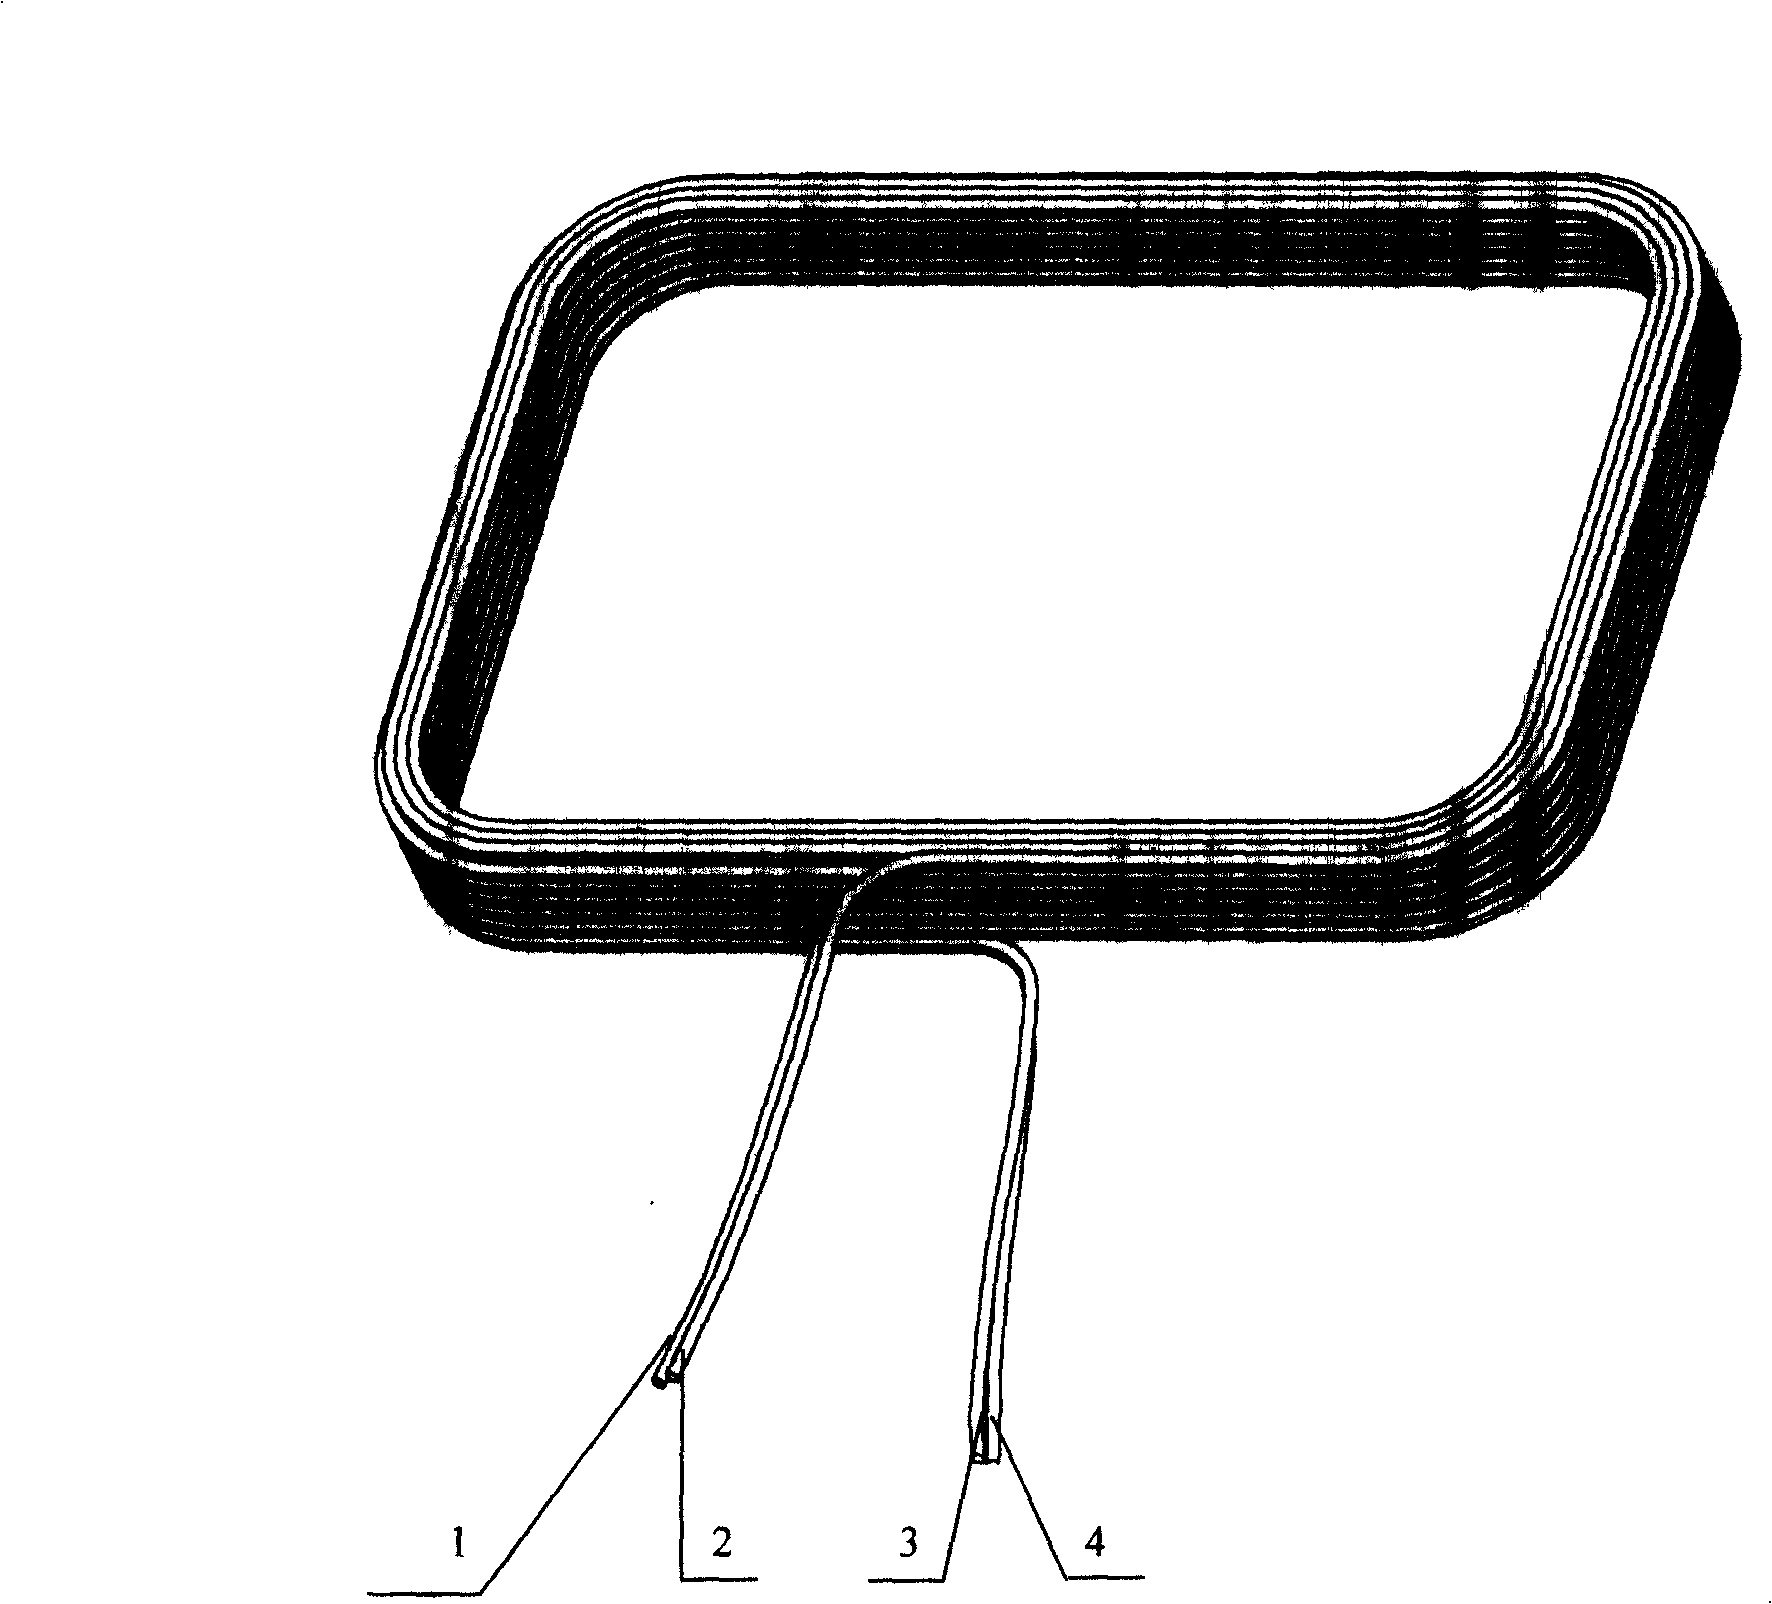 A RFID reader/writer antenna design